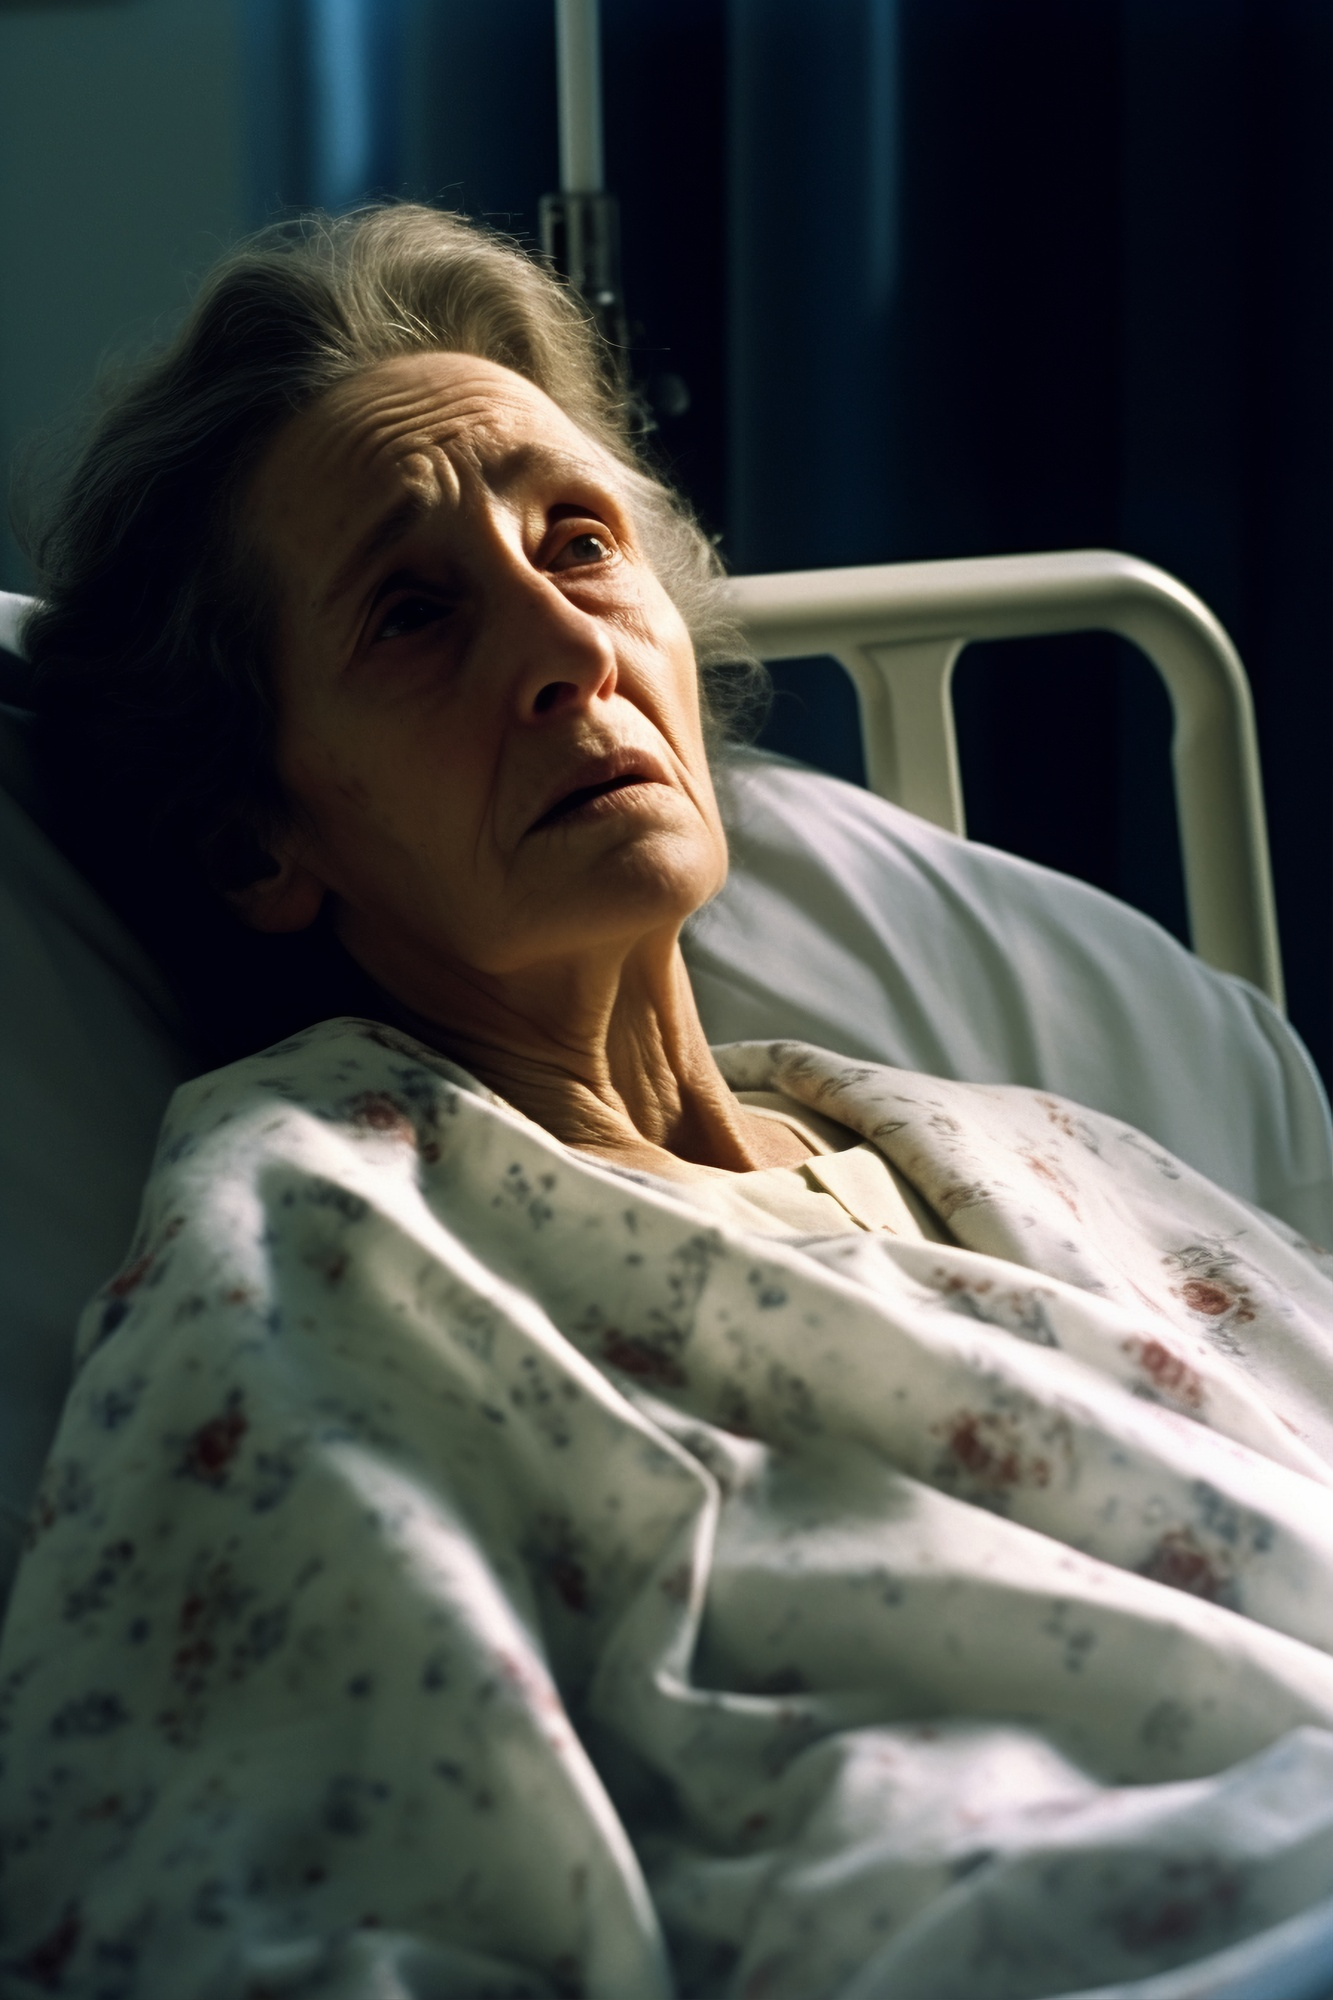 Eine kranke ältere Frau in einem Krankenhausbett | Quelle: Freepik